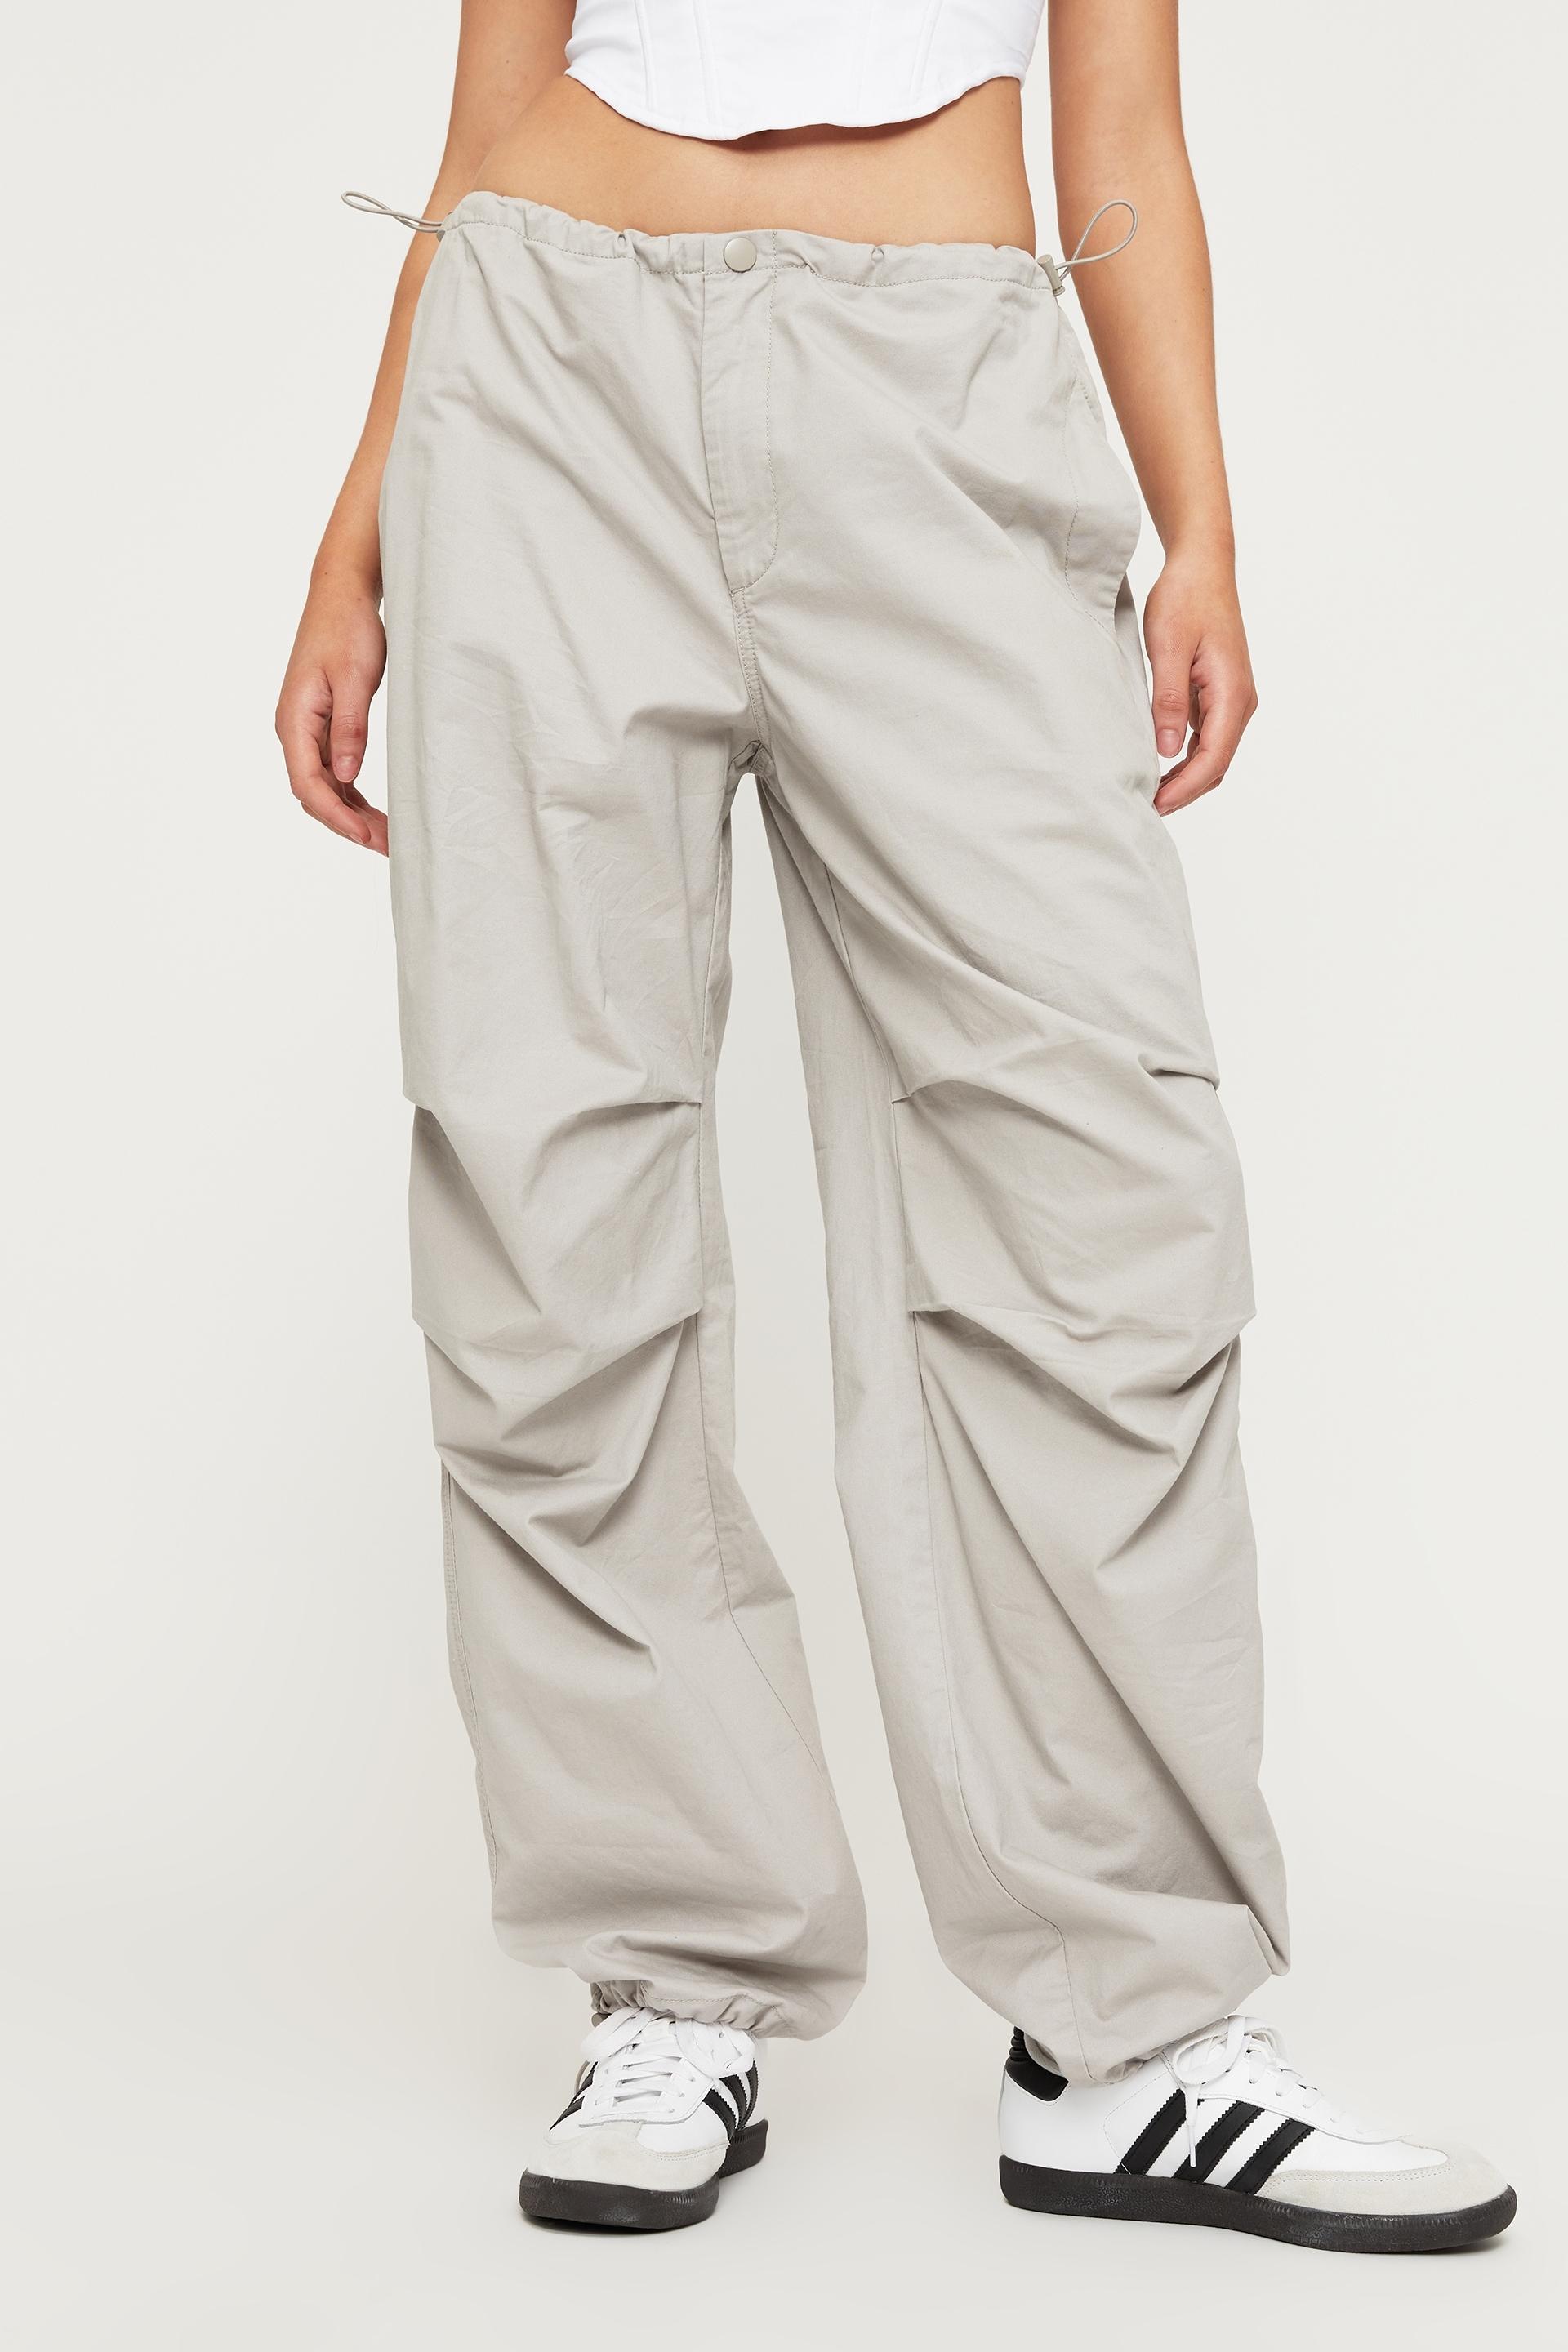 Lala parachute pant - silver grey Supré Trousers | Superbalist.com